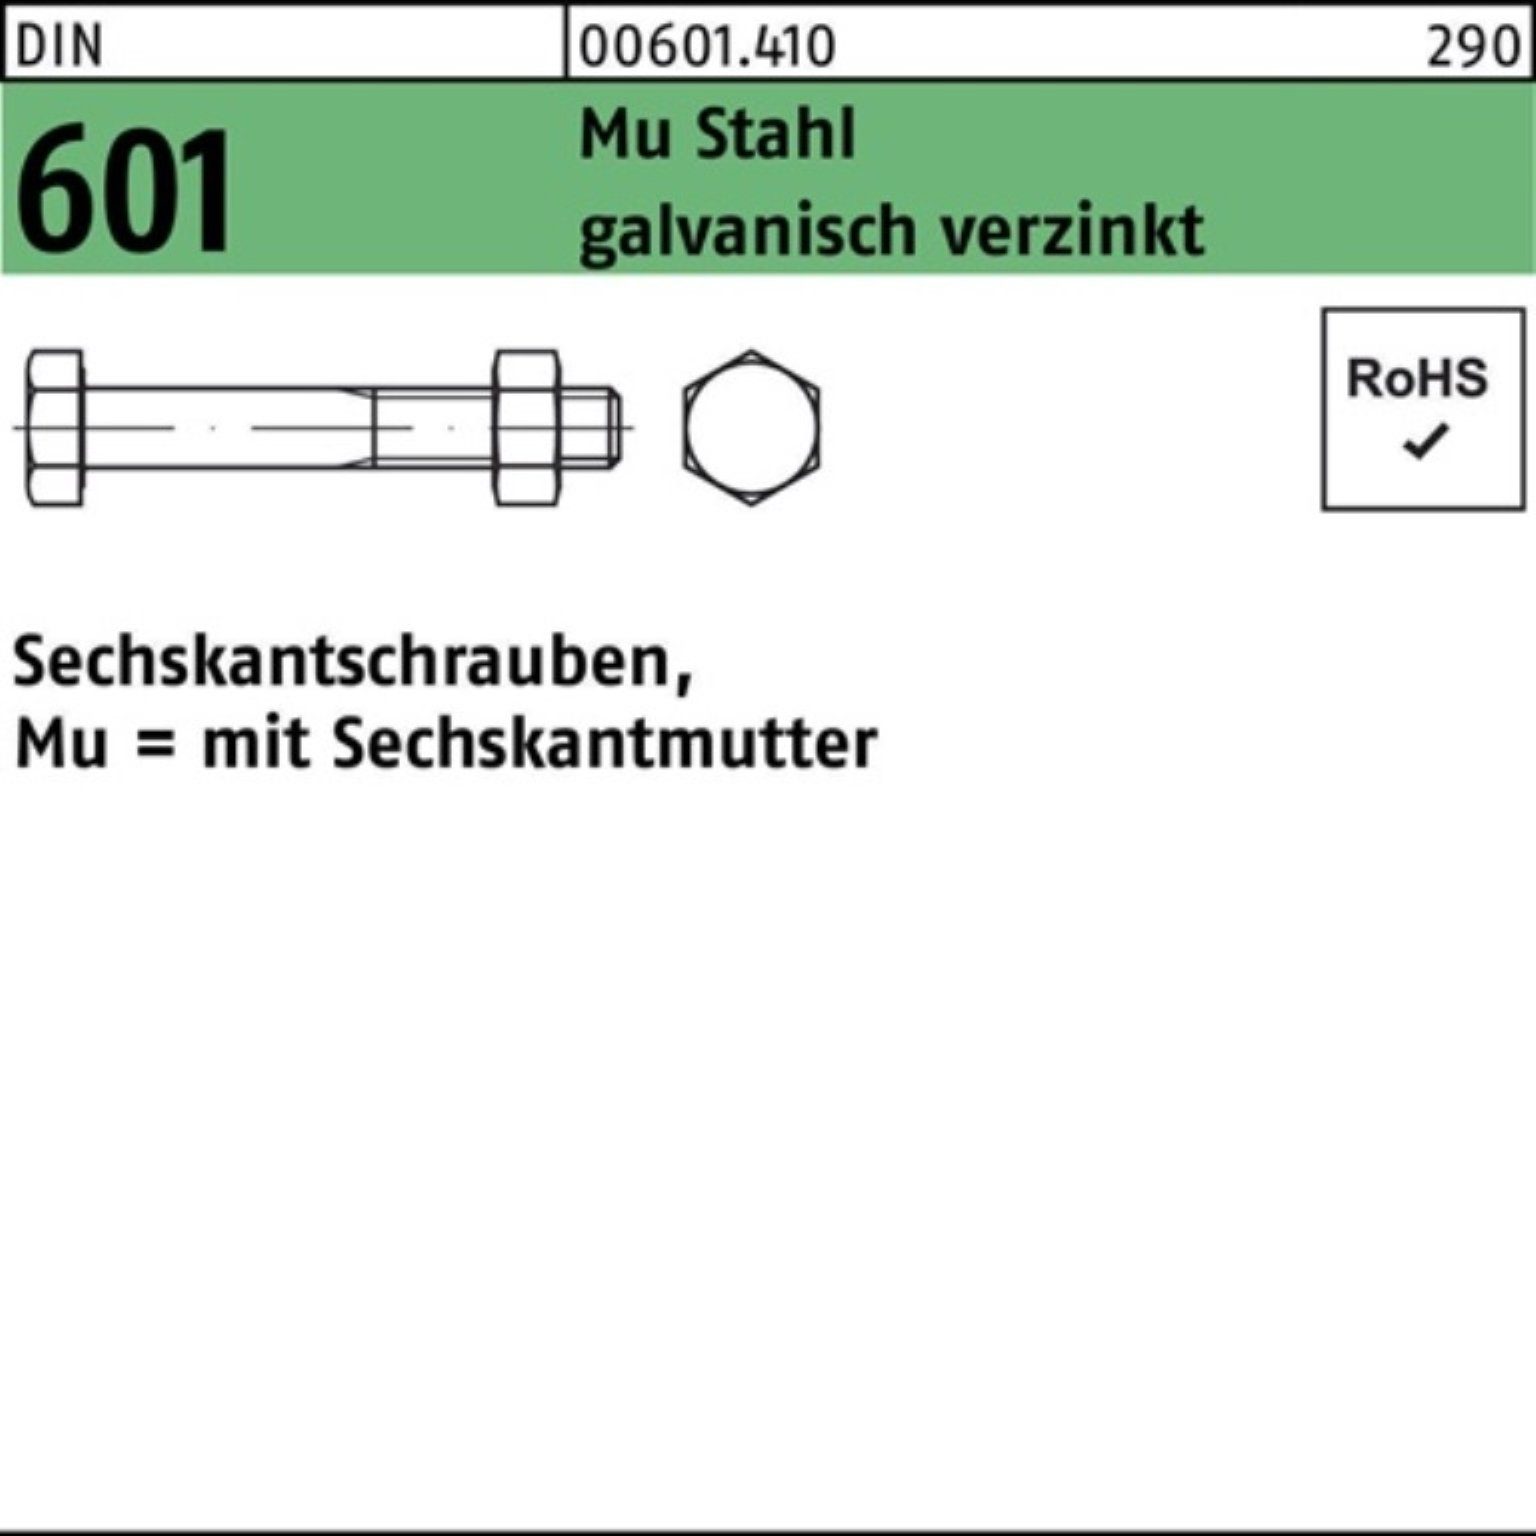 Reyher Sechskantmutter 200er Pack Sechskantschraube DIN 601 Sechskantmutter M8x50 Mu Stahl 4.